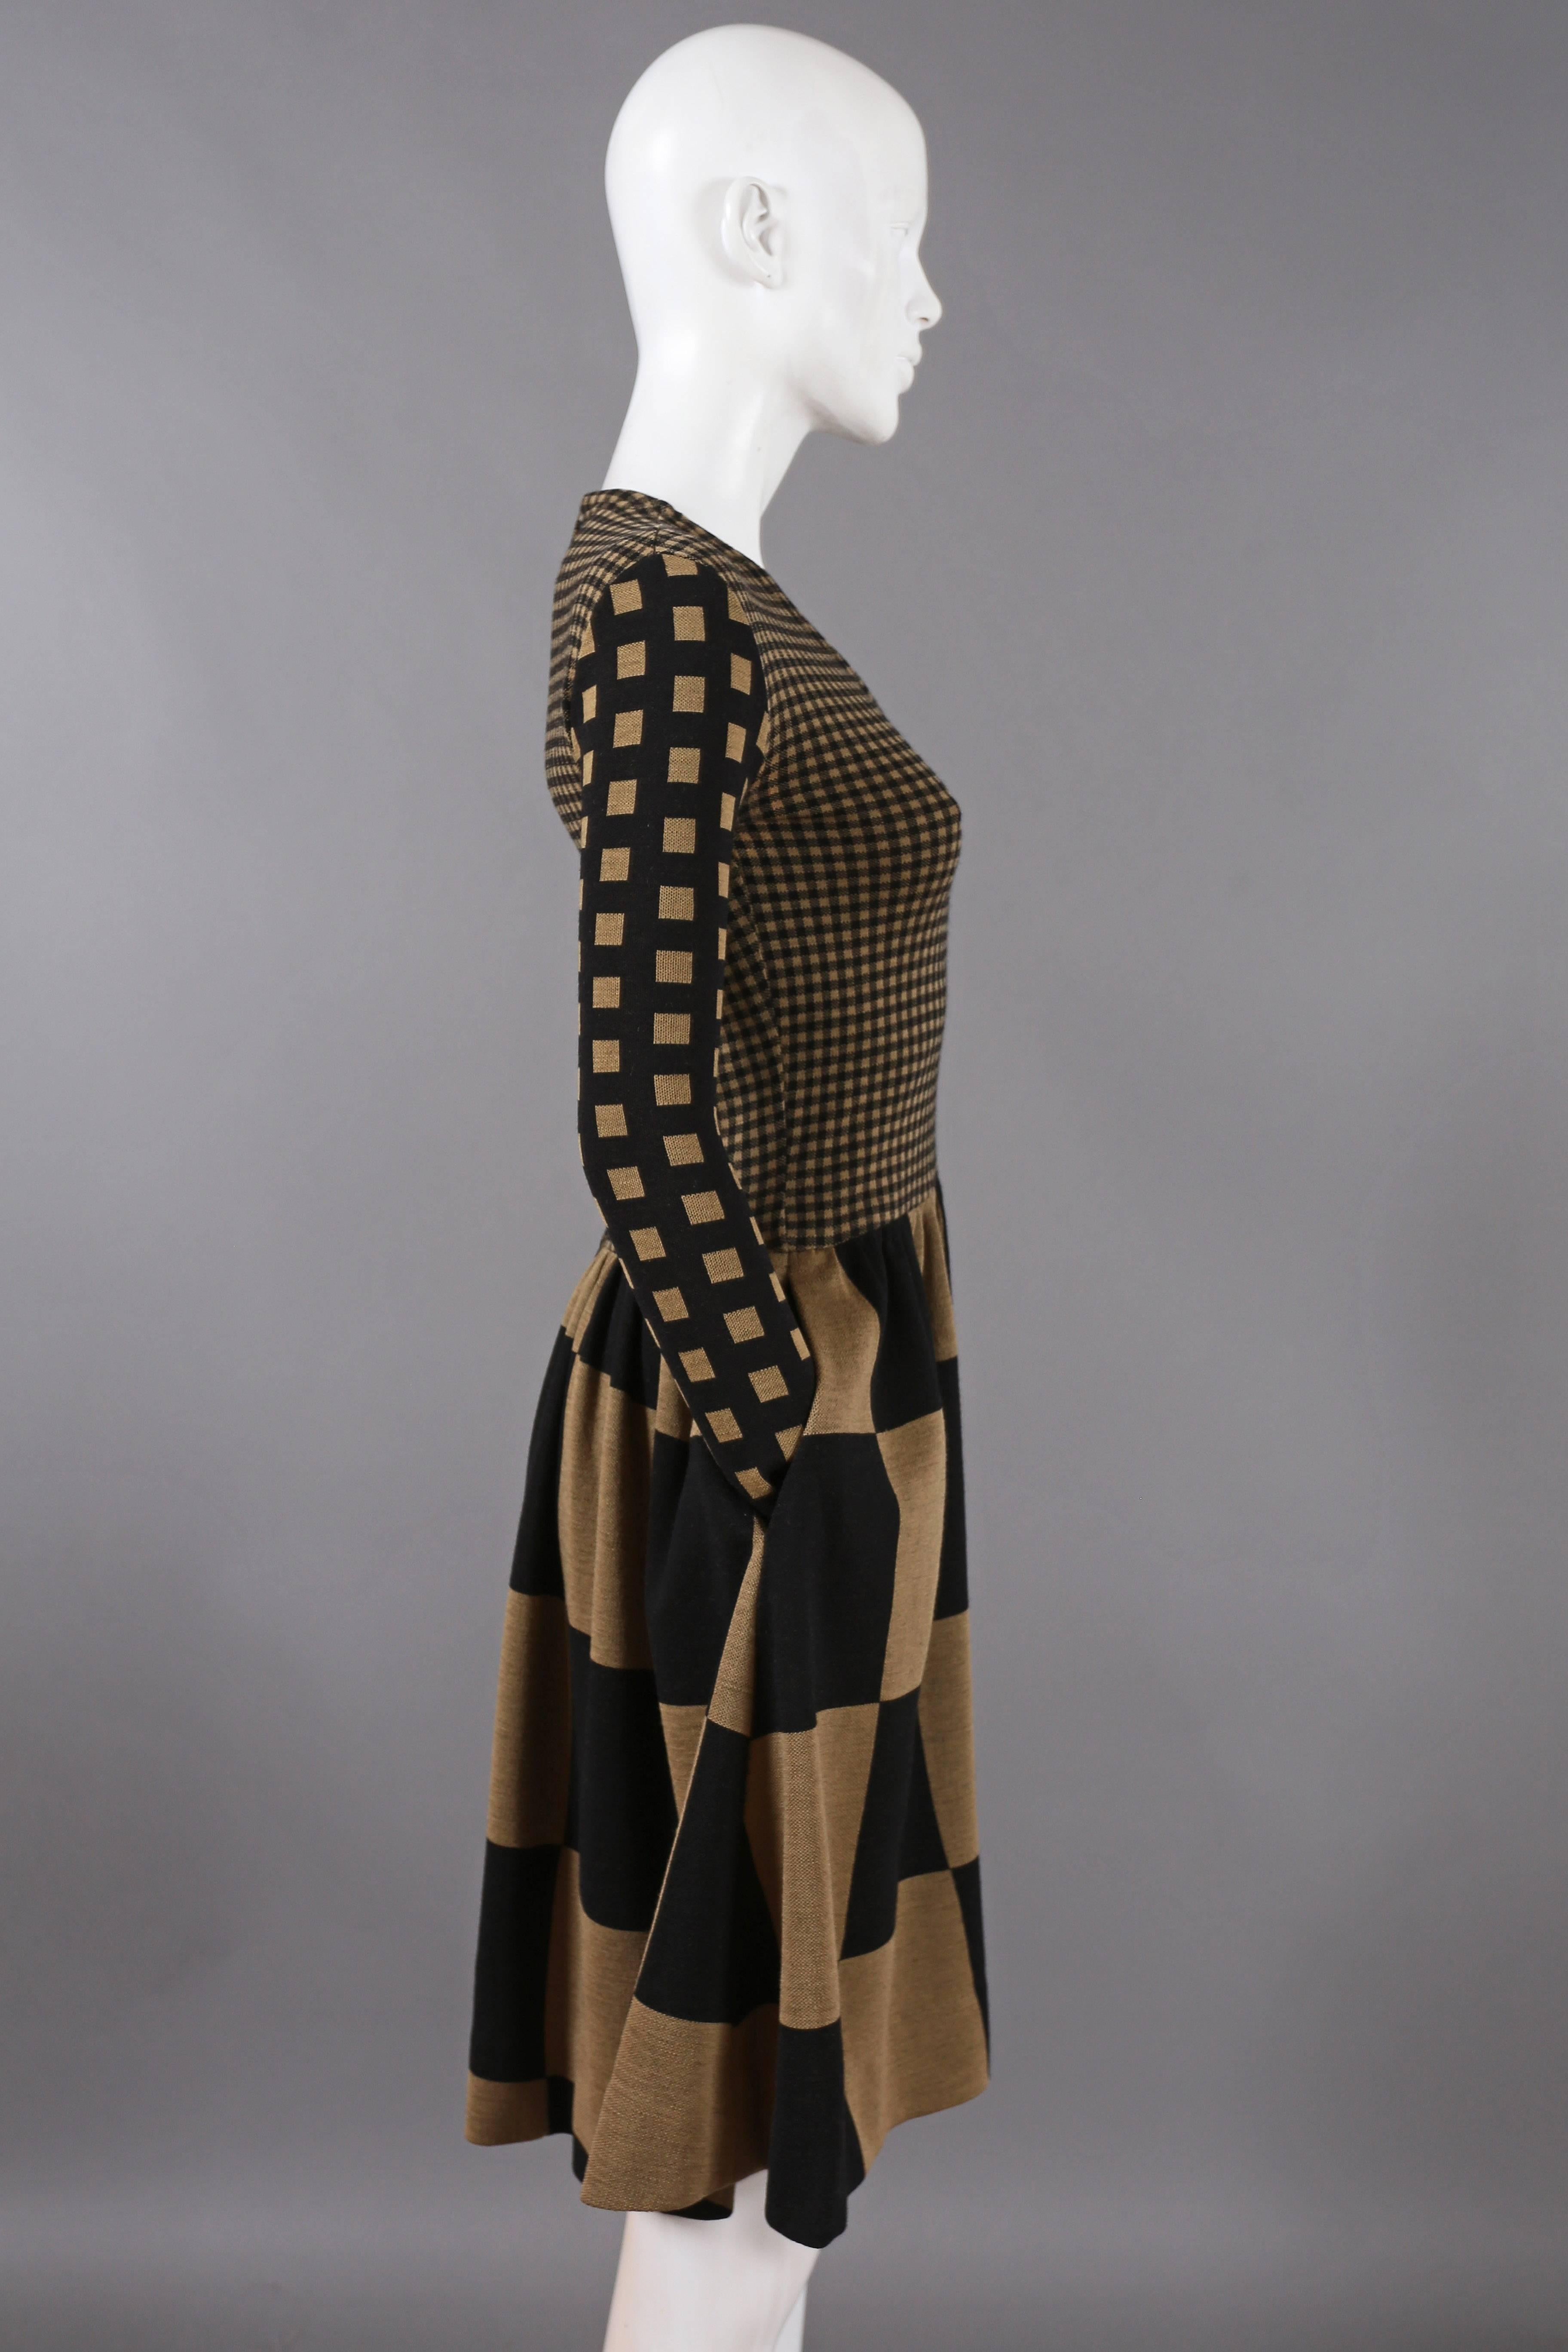 Black Rudi Gernreich chessboard knitted dress, C. 1971